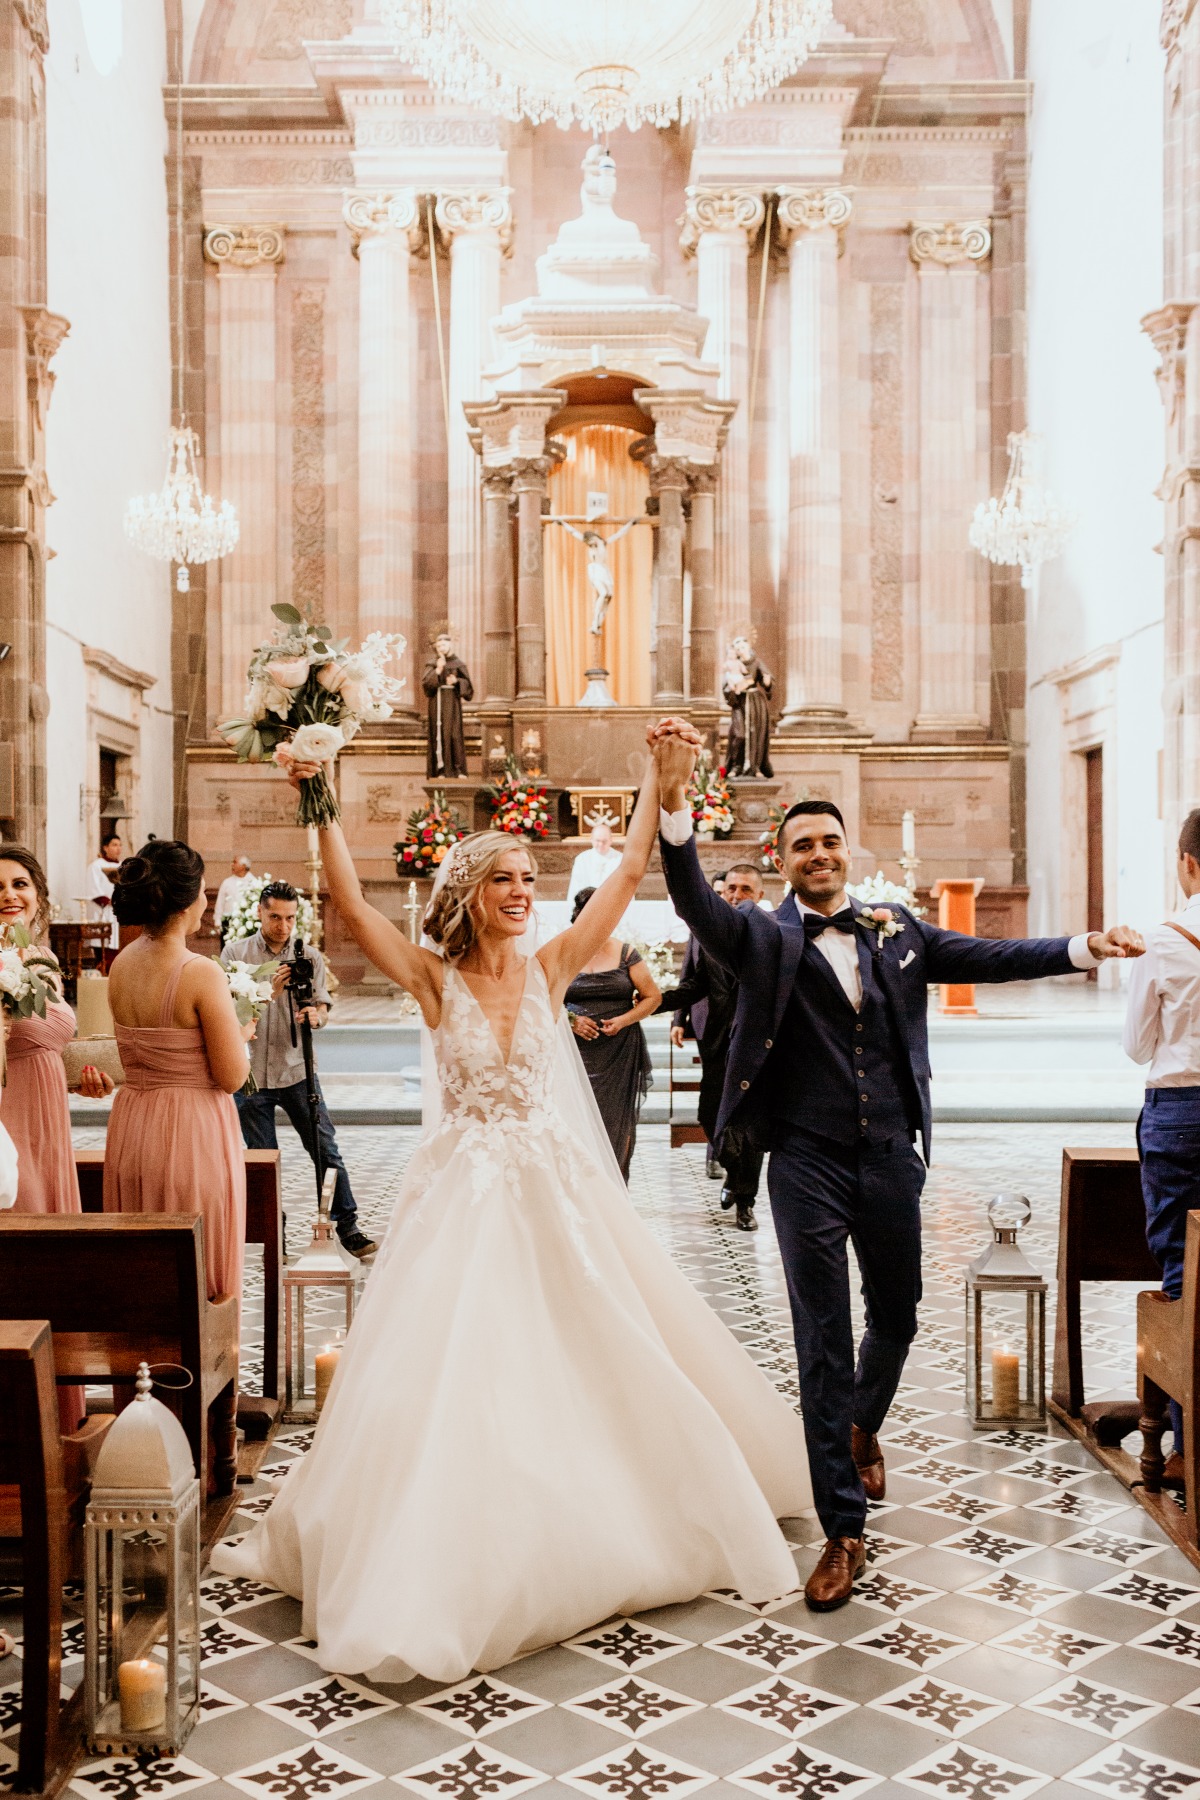 18th century church wedding in San Miguel de Allende